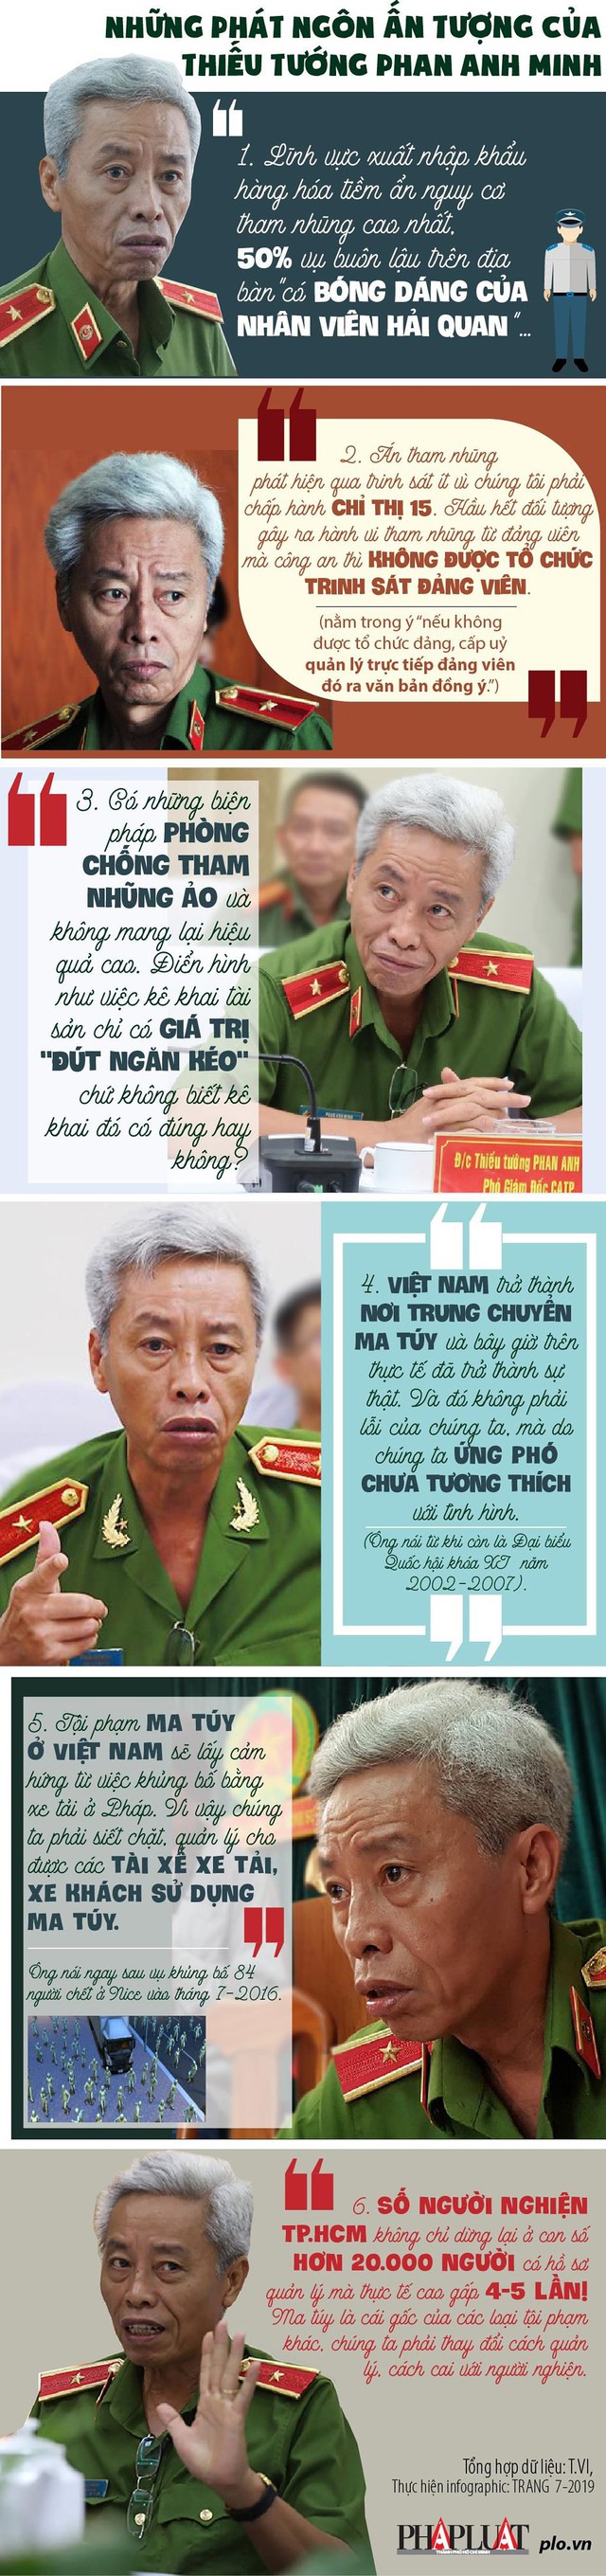 6 phát ngôn dậy sóng của Thiếu tướng Phan Anh Minh - Ảnh 1.